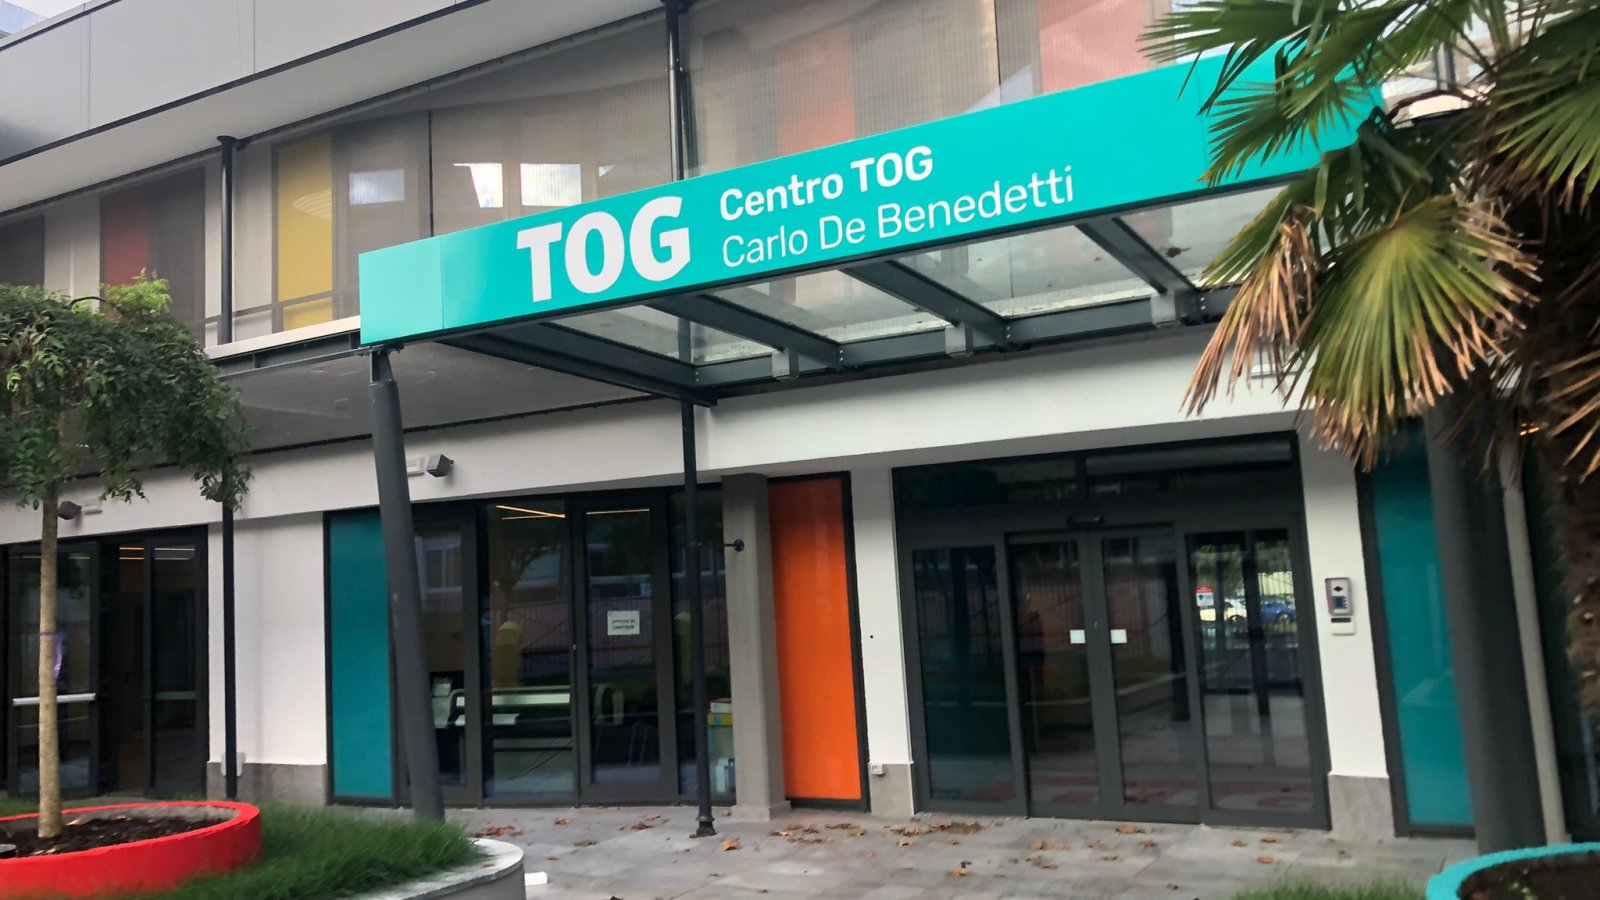 The TOG Carlo De Benedetti Centre will soon be inaugurated